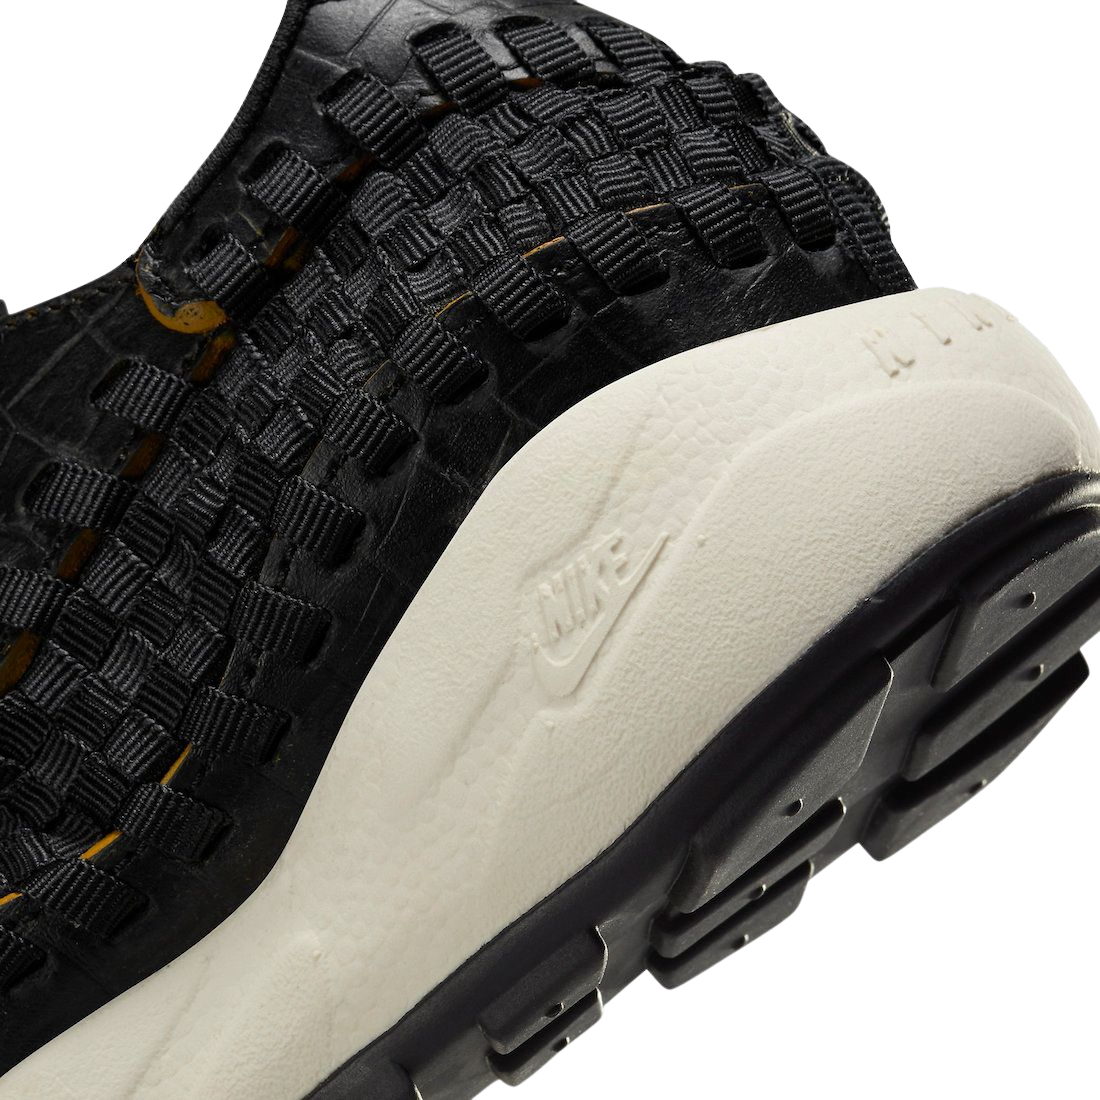 Nike Air Footscape Woven Premium Black Croc (W)